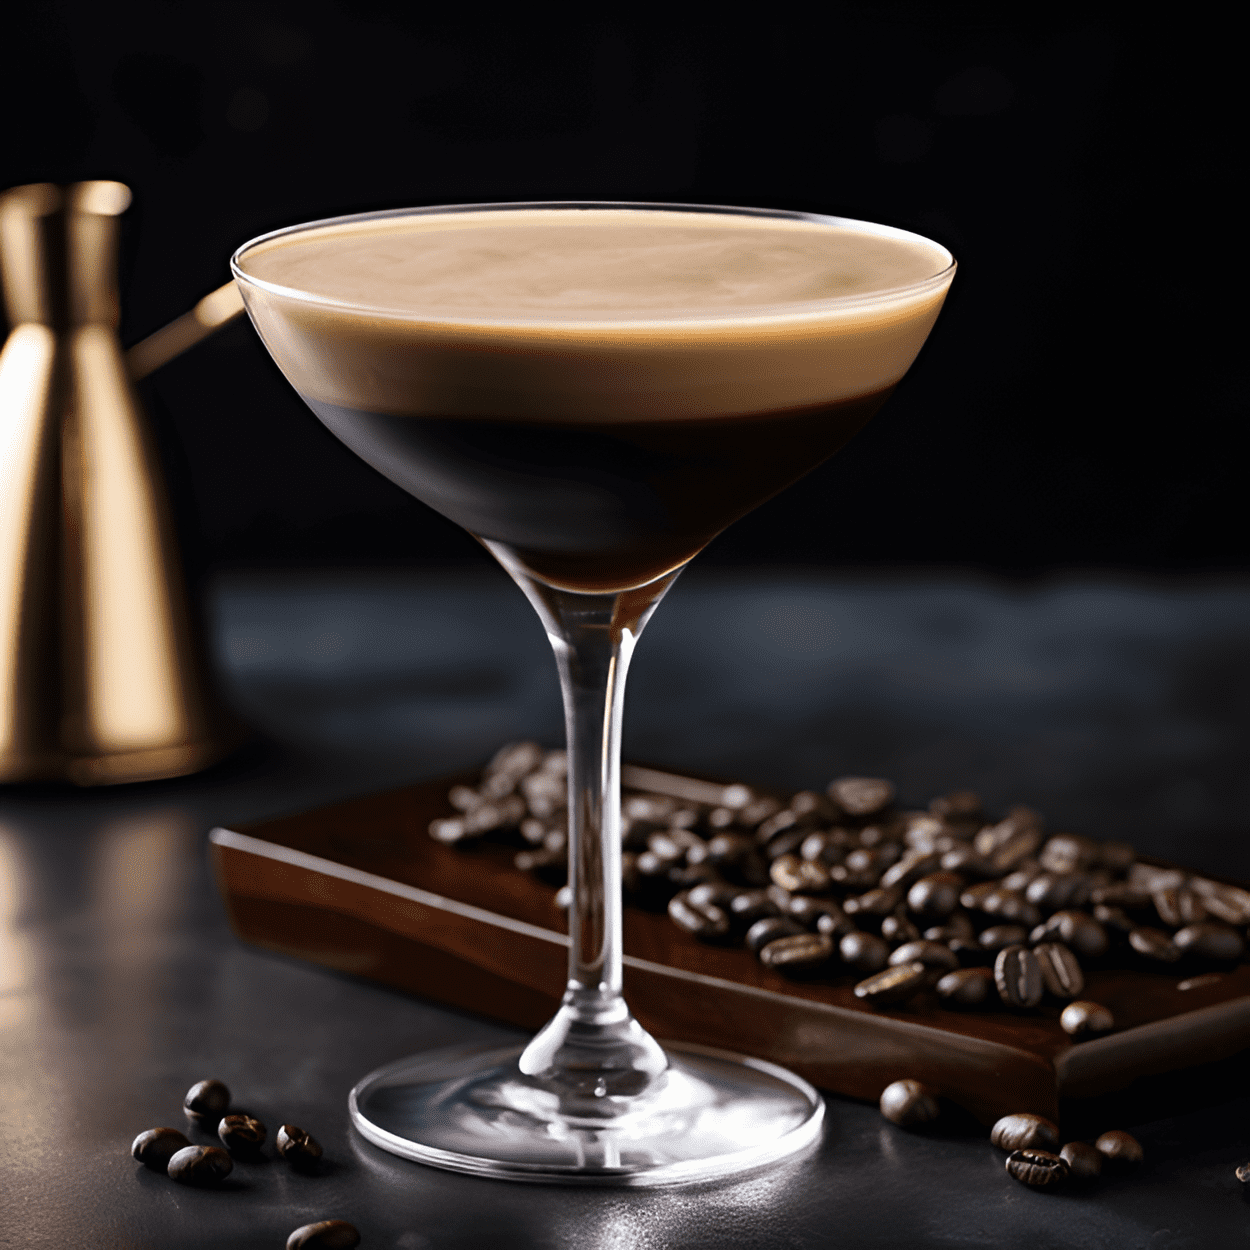 El Espresso Martini es un cóctel rico, aterciopelado y ligeramente dulce con un fuerte sabor a café y un toque de amargor. Tiene una textura cremosa y una parte superior espumosa, lo que lo convierte en una bebida lujosa e indulgente.